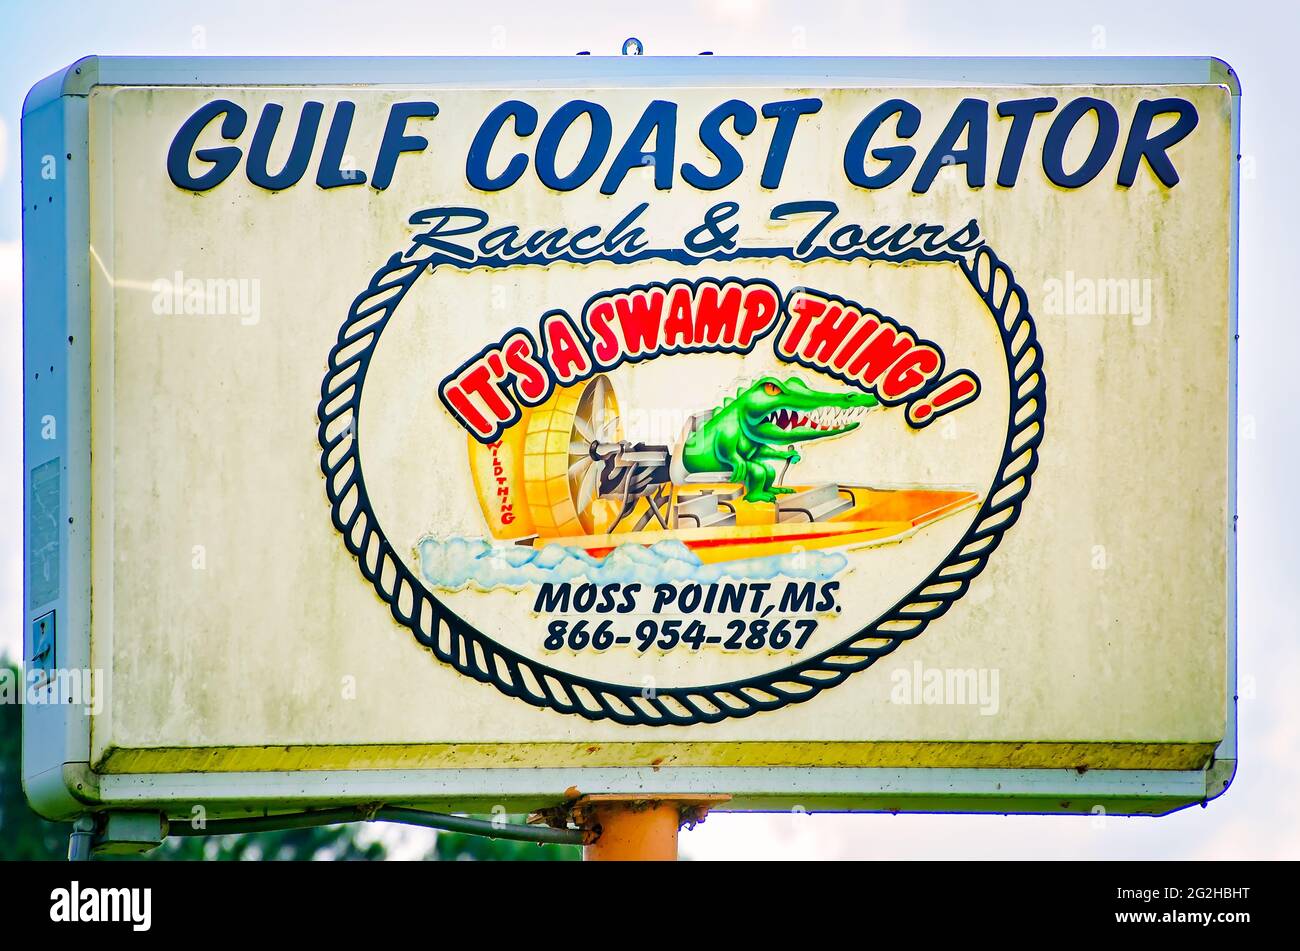 Le panneau Gulf Coast Gator Ranch and Tours présente un alligator conduisant un hydroglisseur, le 9 juin 2021, à Moss point, Mississippi. Banque D'Images